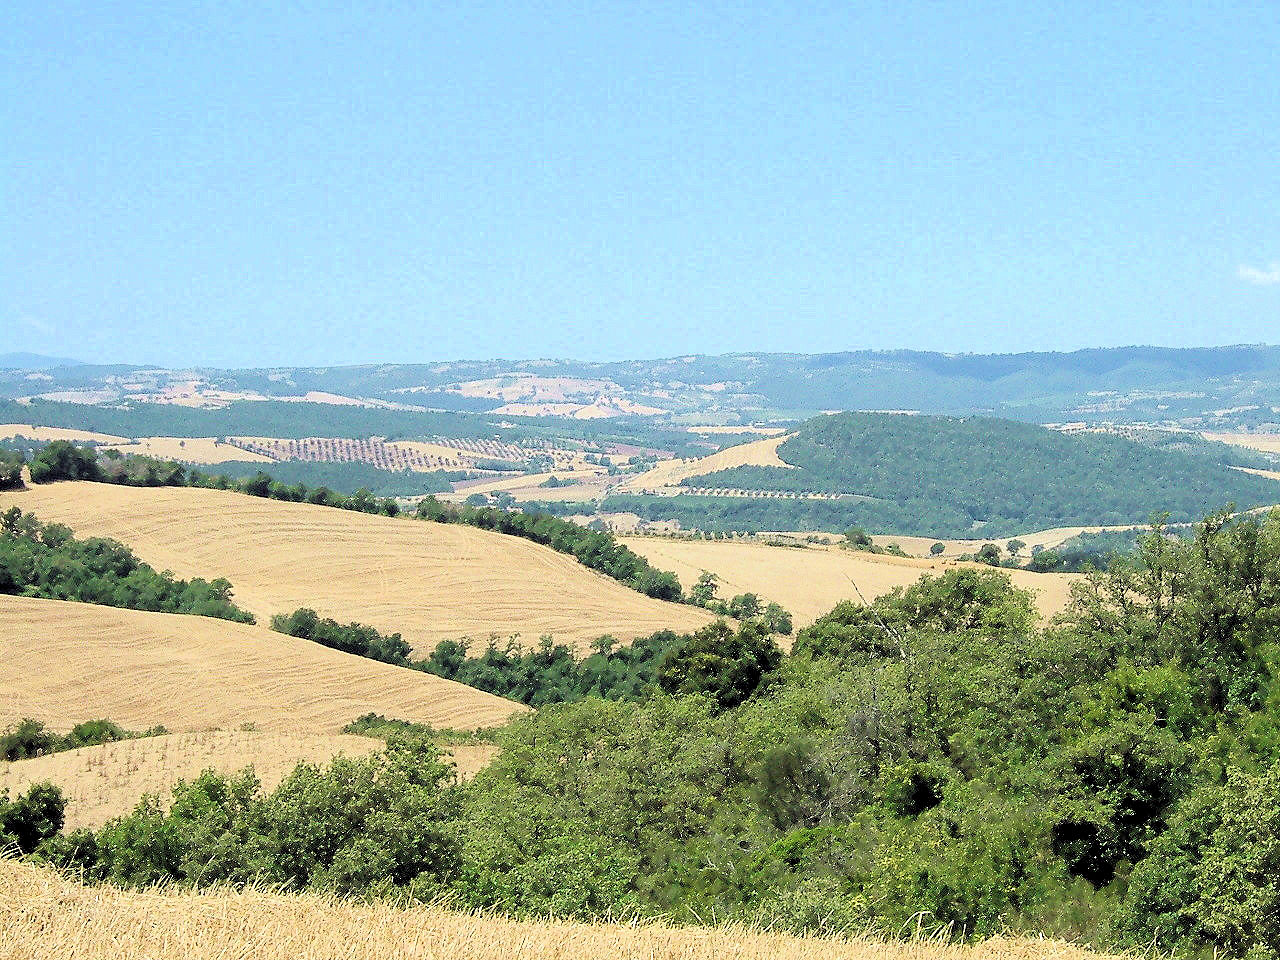 Terreno Agricolo in vendita a Manciano, 9999 locali, zona Località: PoderidiMontemerano, Trattative riservate | CambioCasa.it